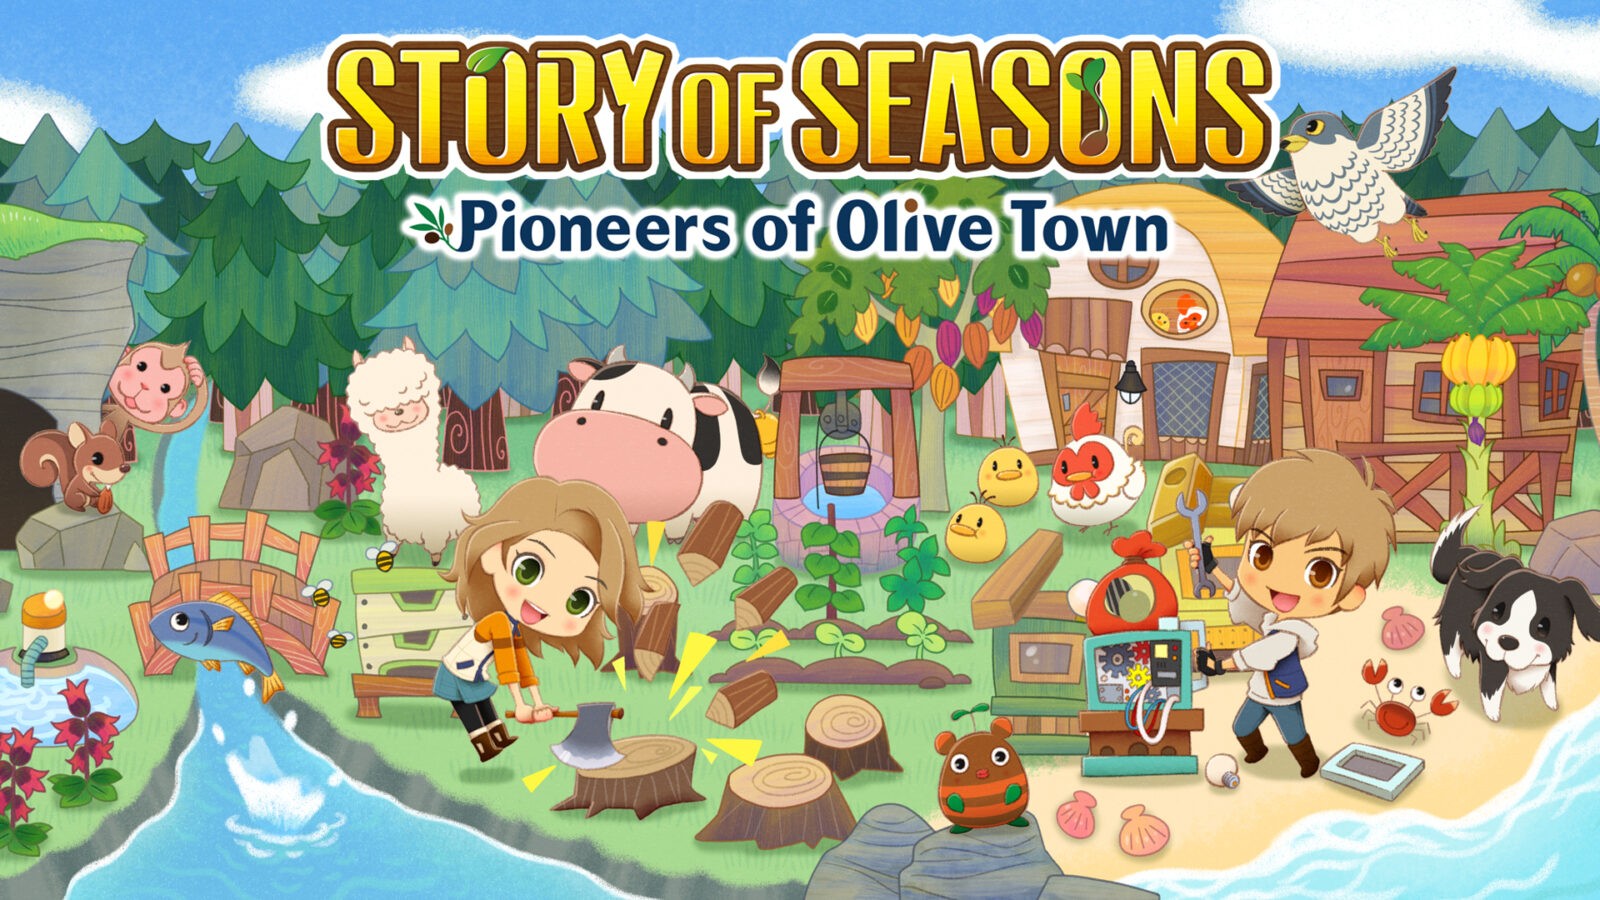 Story of Seasons: Pioneers of Olive Town Tuju PC via Steam